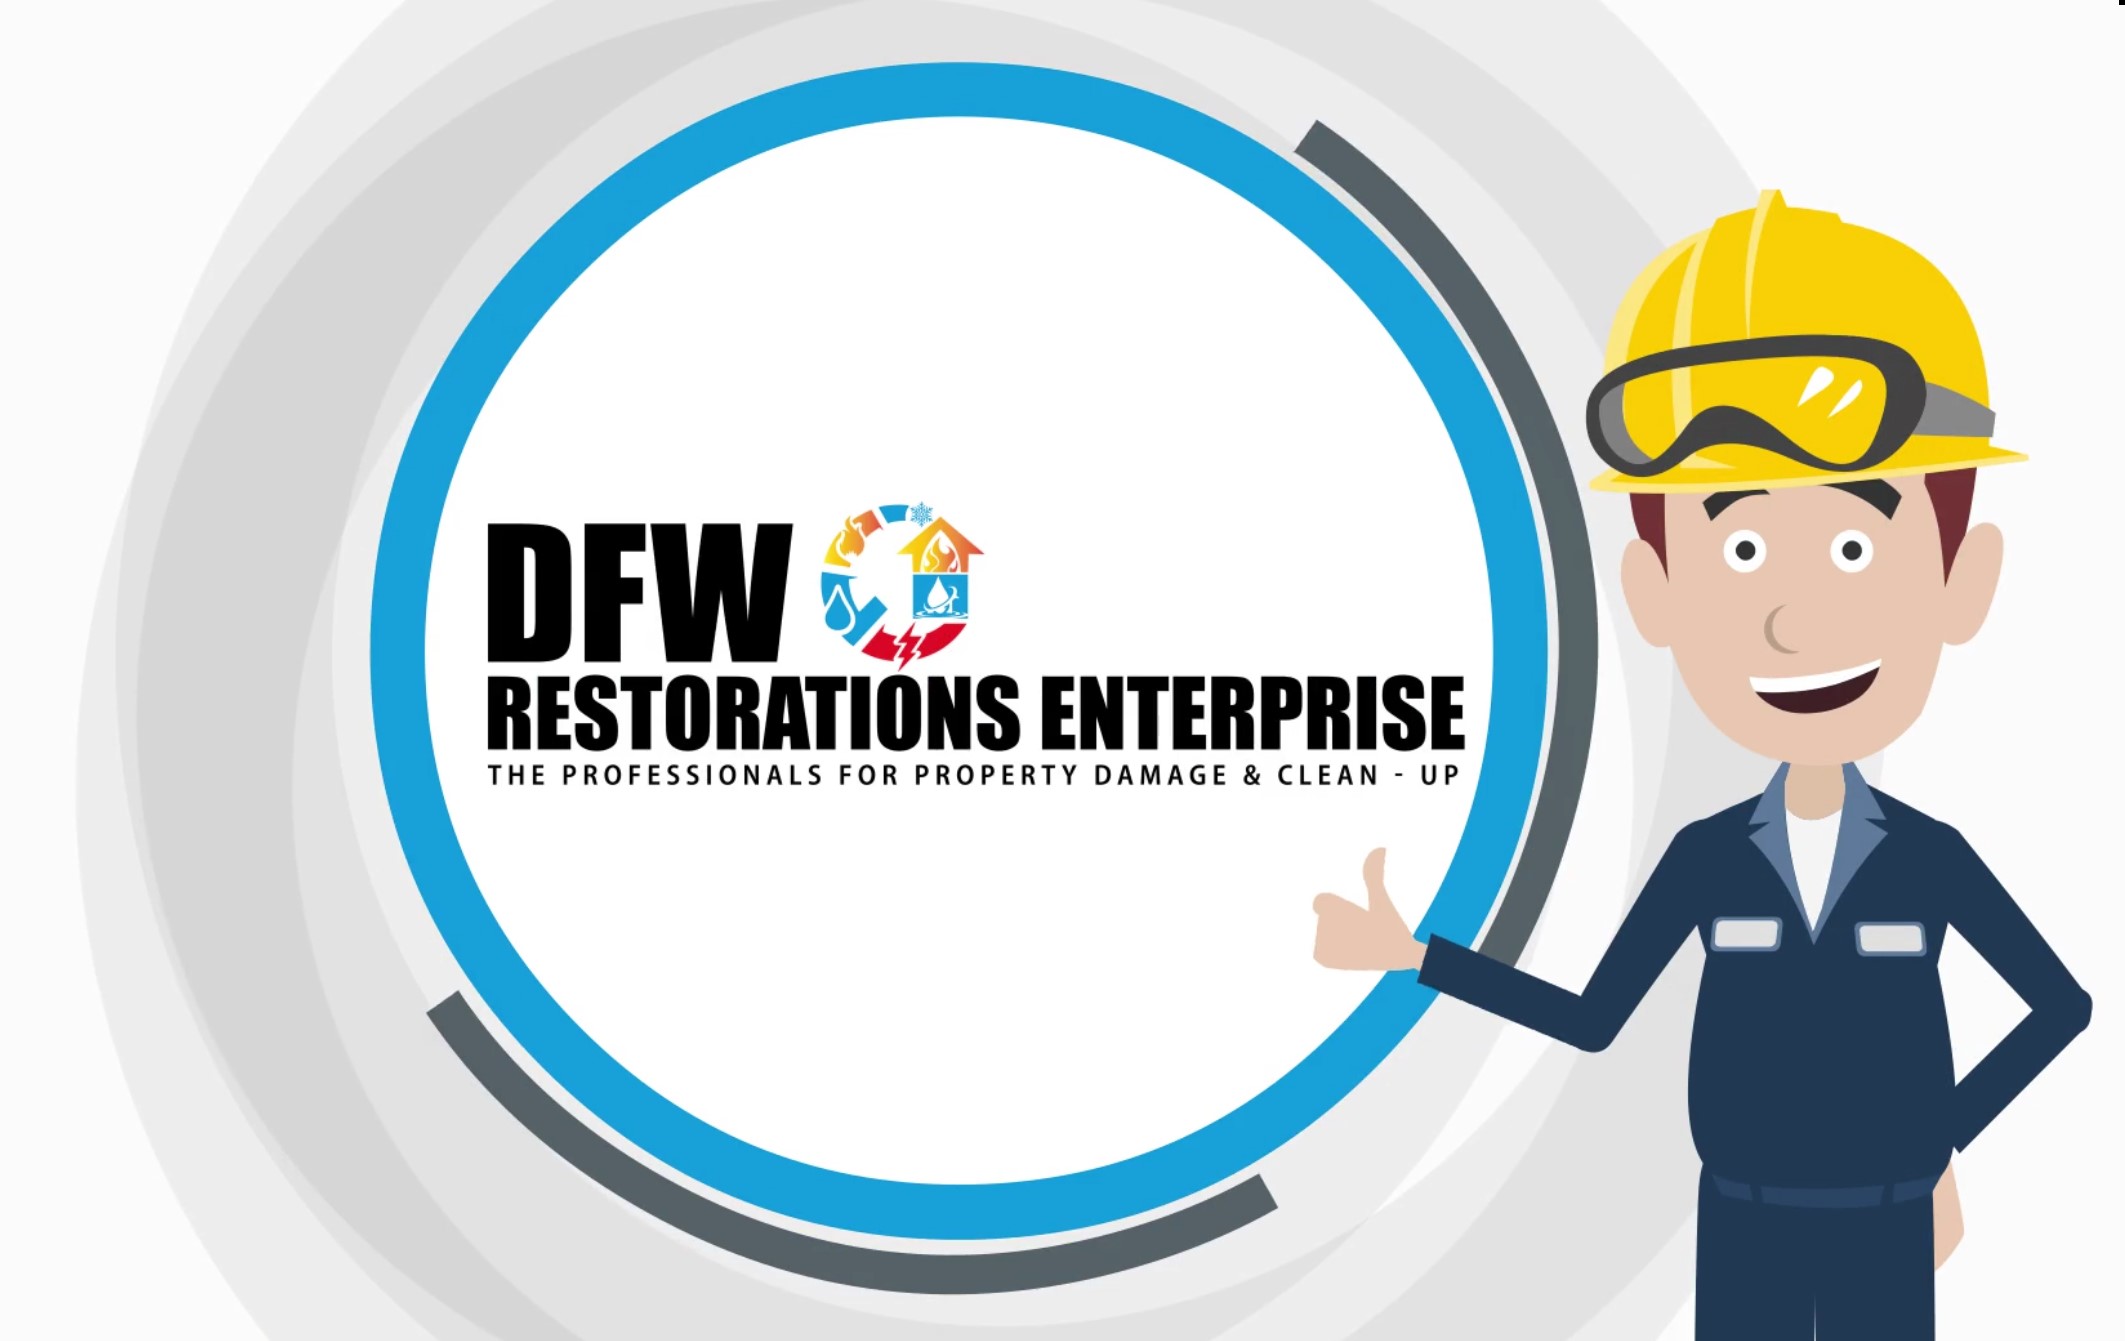 DFW Restorations